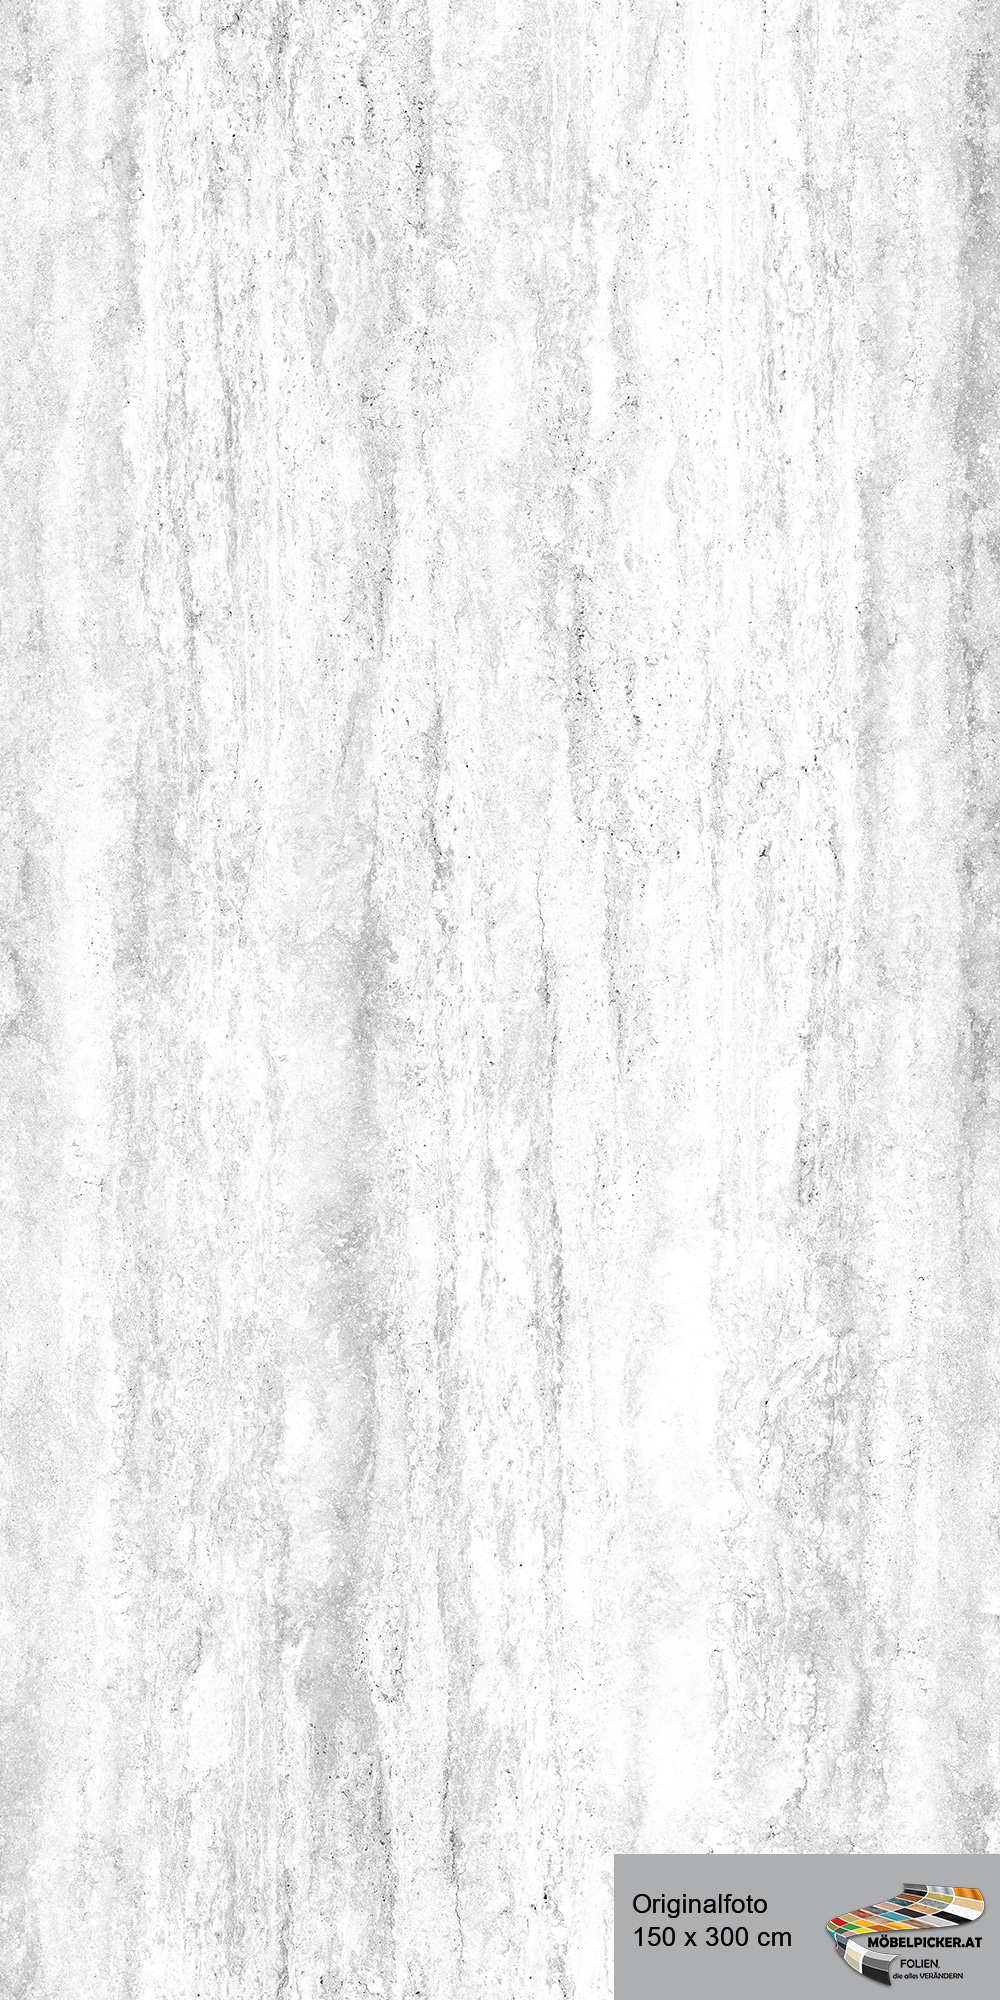 Alu-Design-Platte Travertin Weiß - Aluminiumverbundplatte für Bäder, WC, Büro, Wände, Wohnzimmer